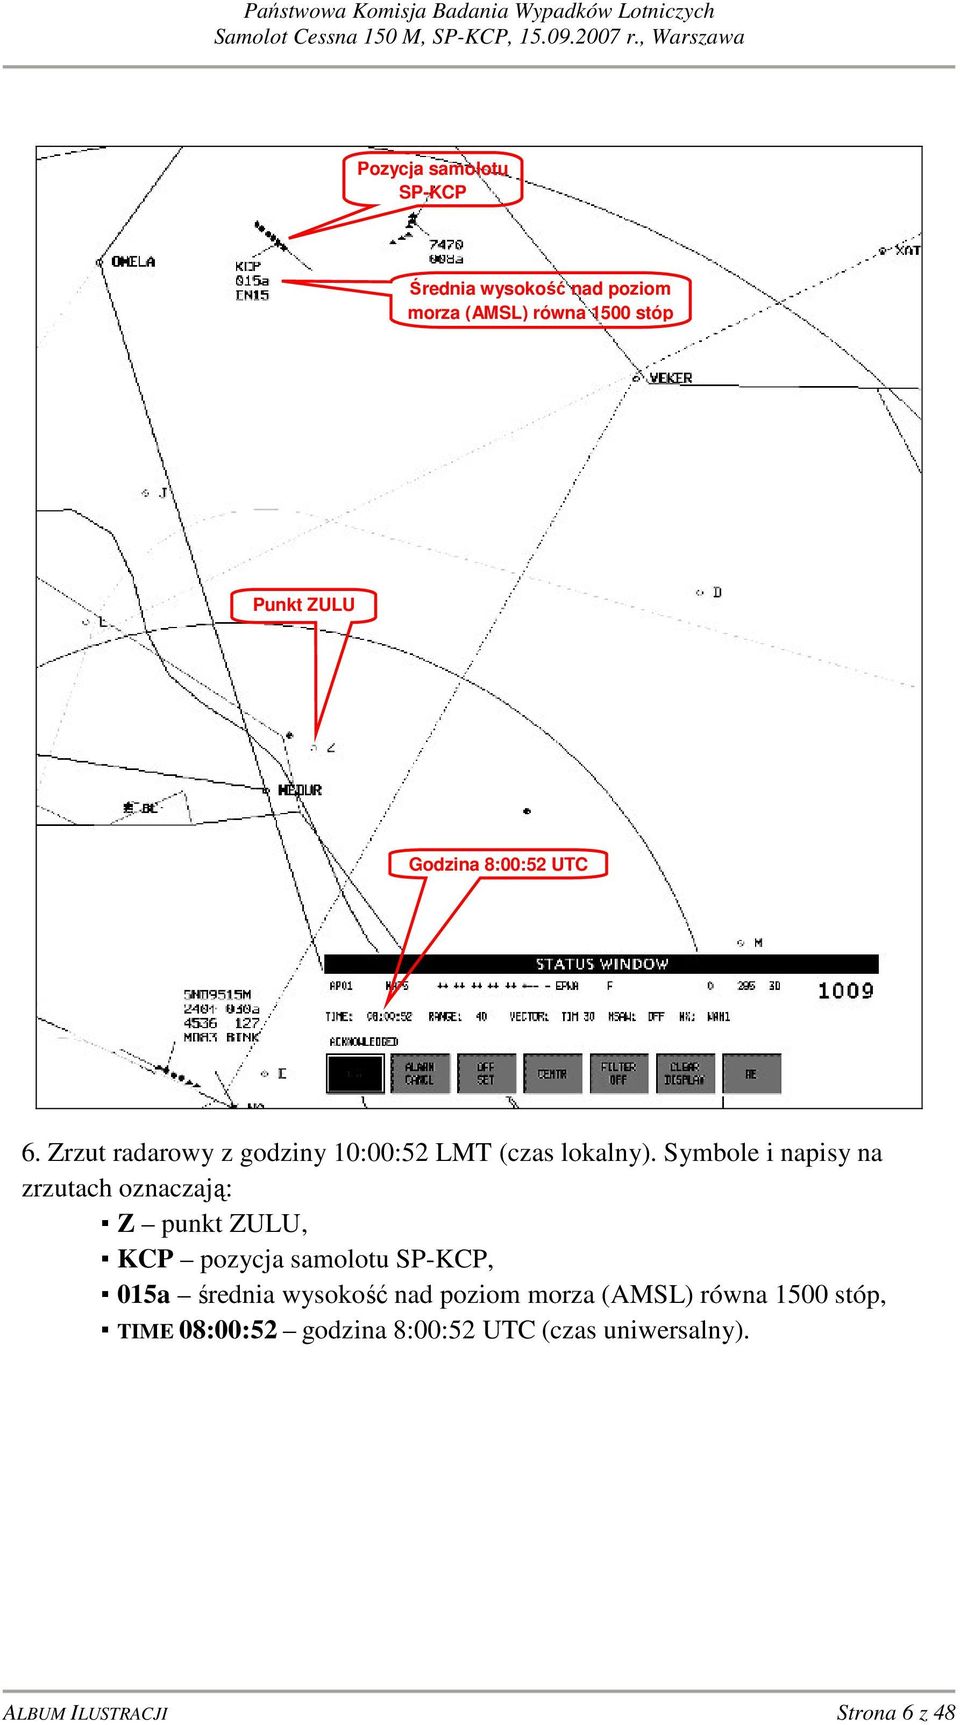 Symbole i napisy na zrzutach oznaczają: Z punkt ZULU, KCP pozycja samolotu SP-KCP, 015a średnia